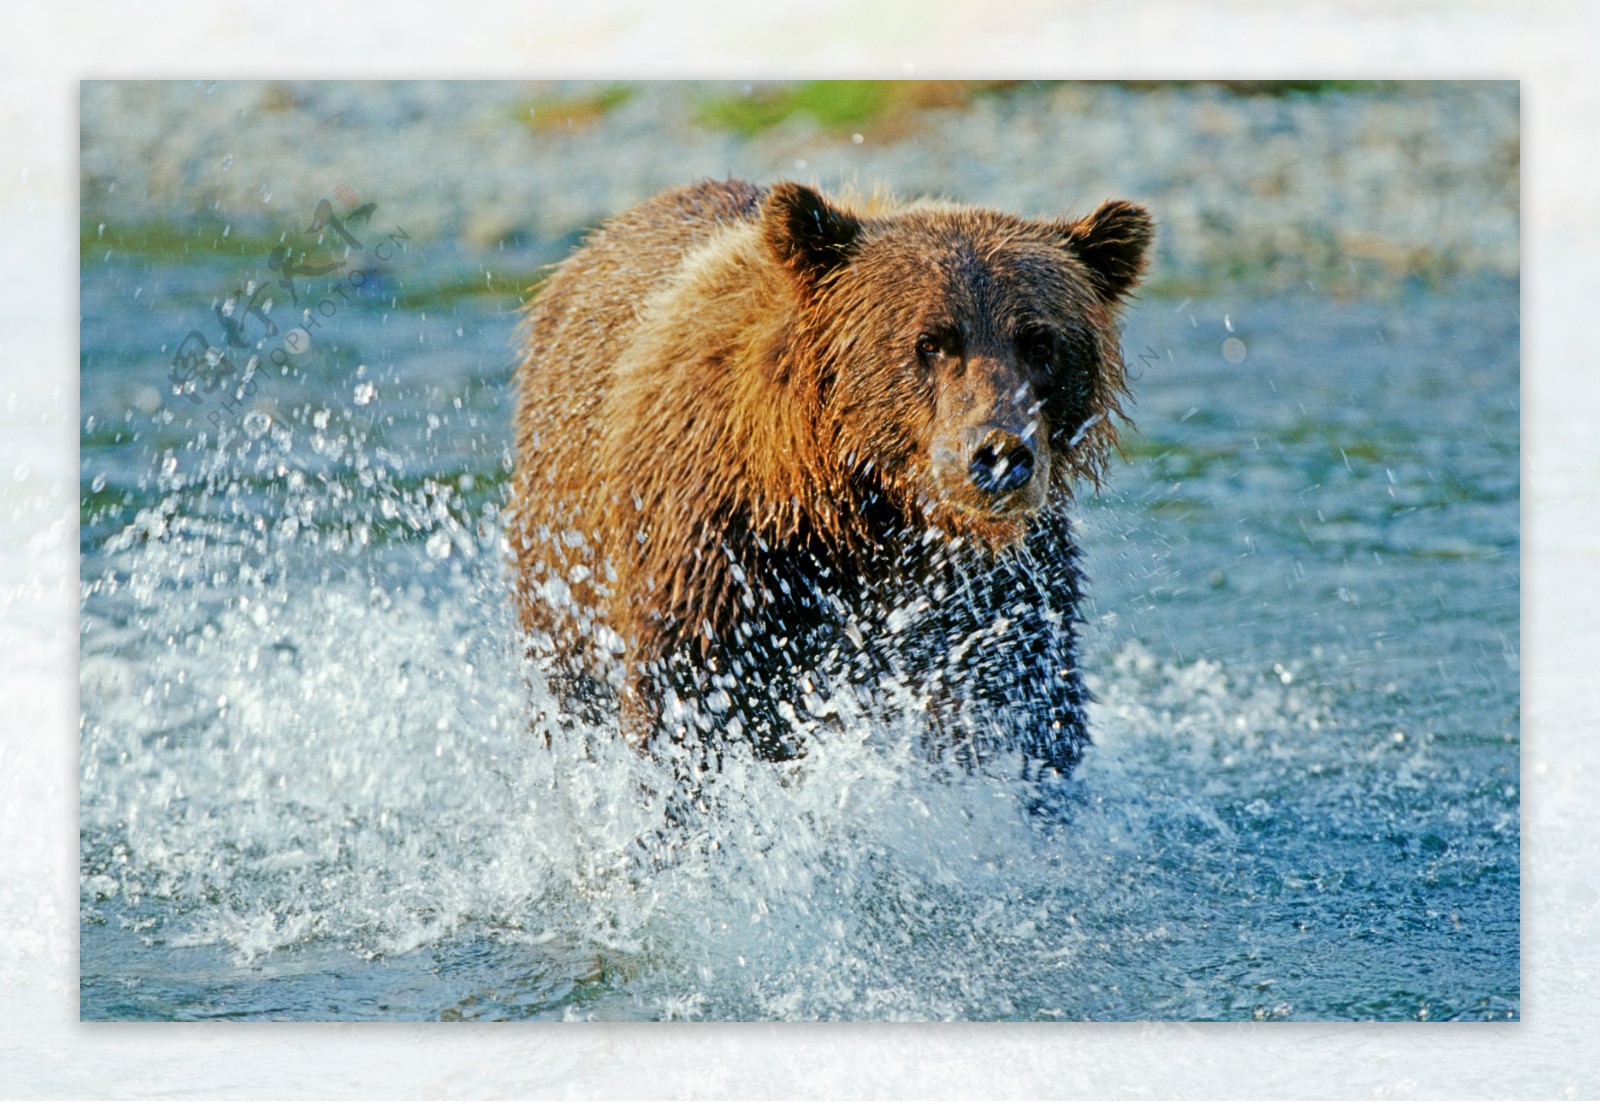 水中奔跑的棕熊